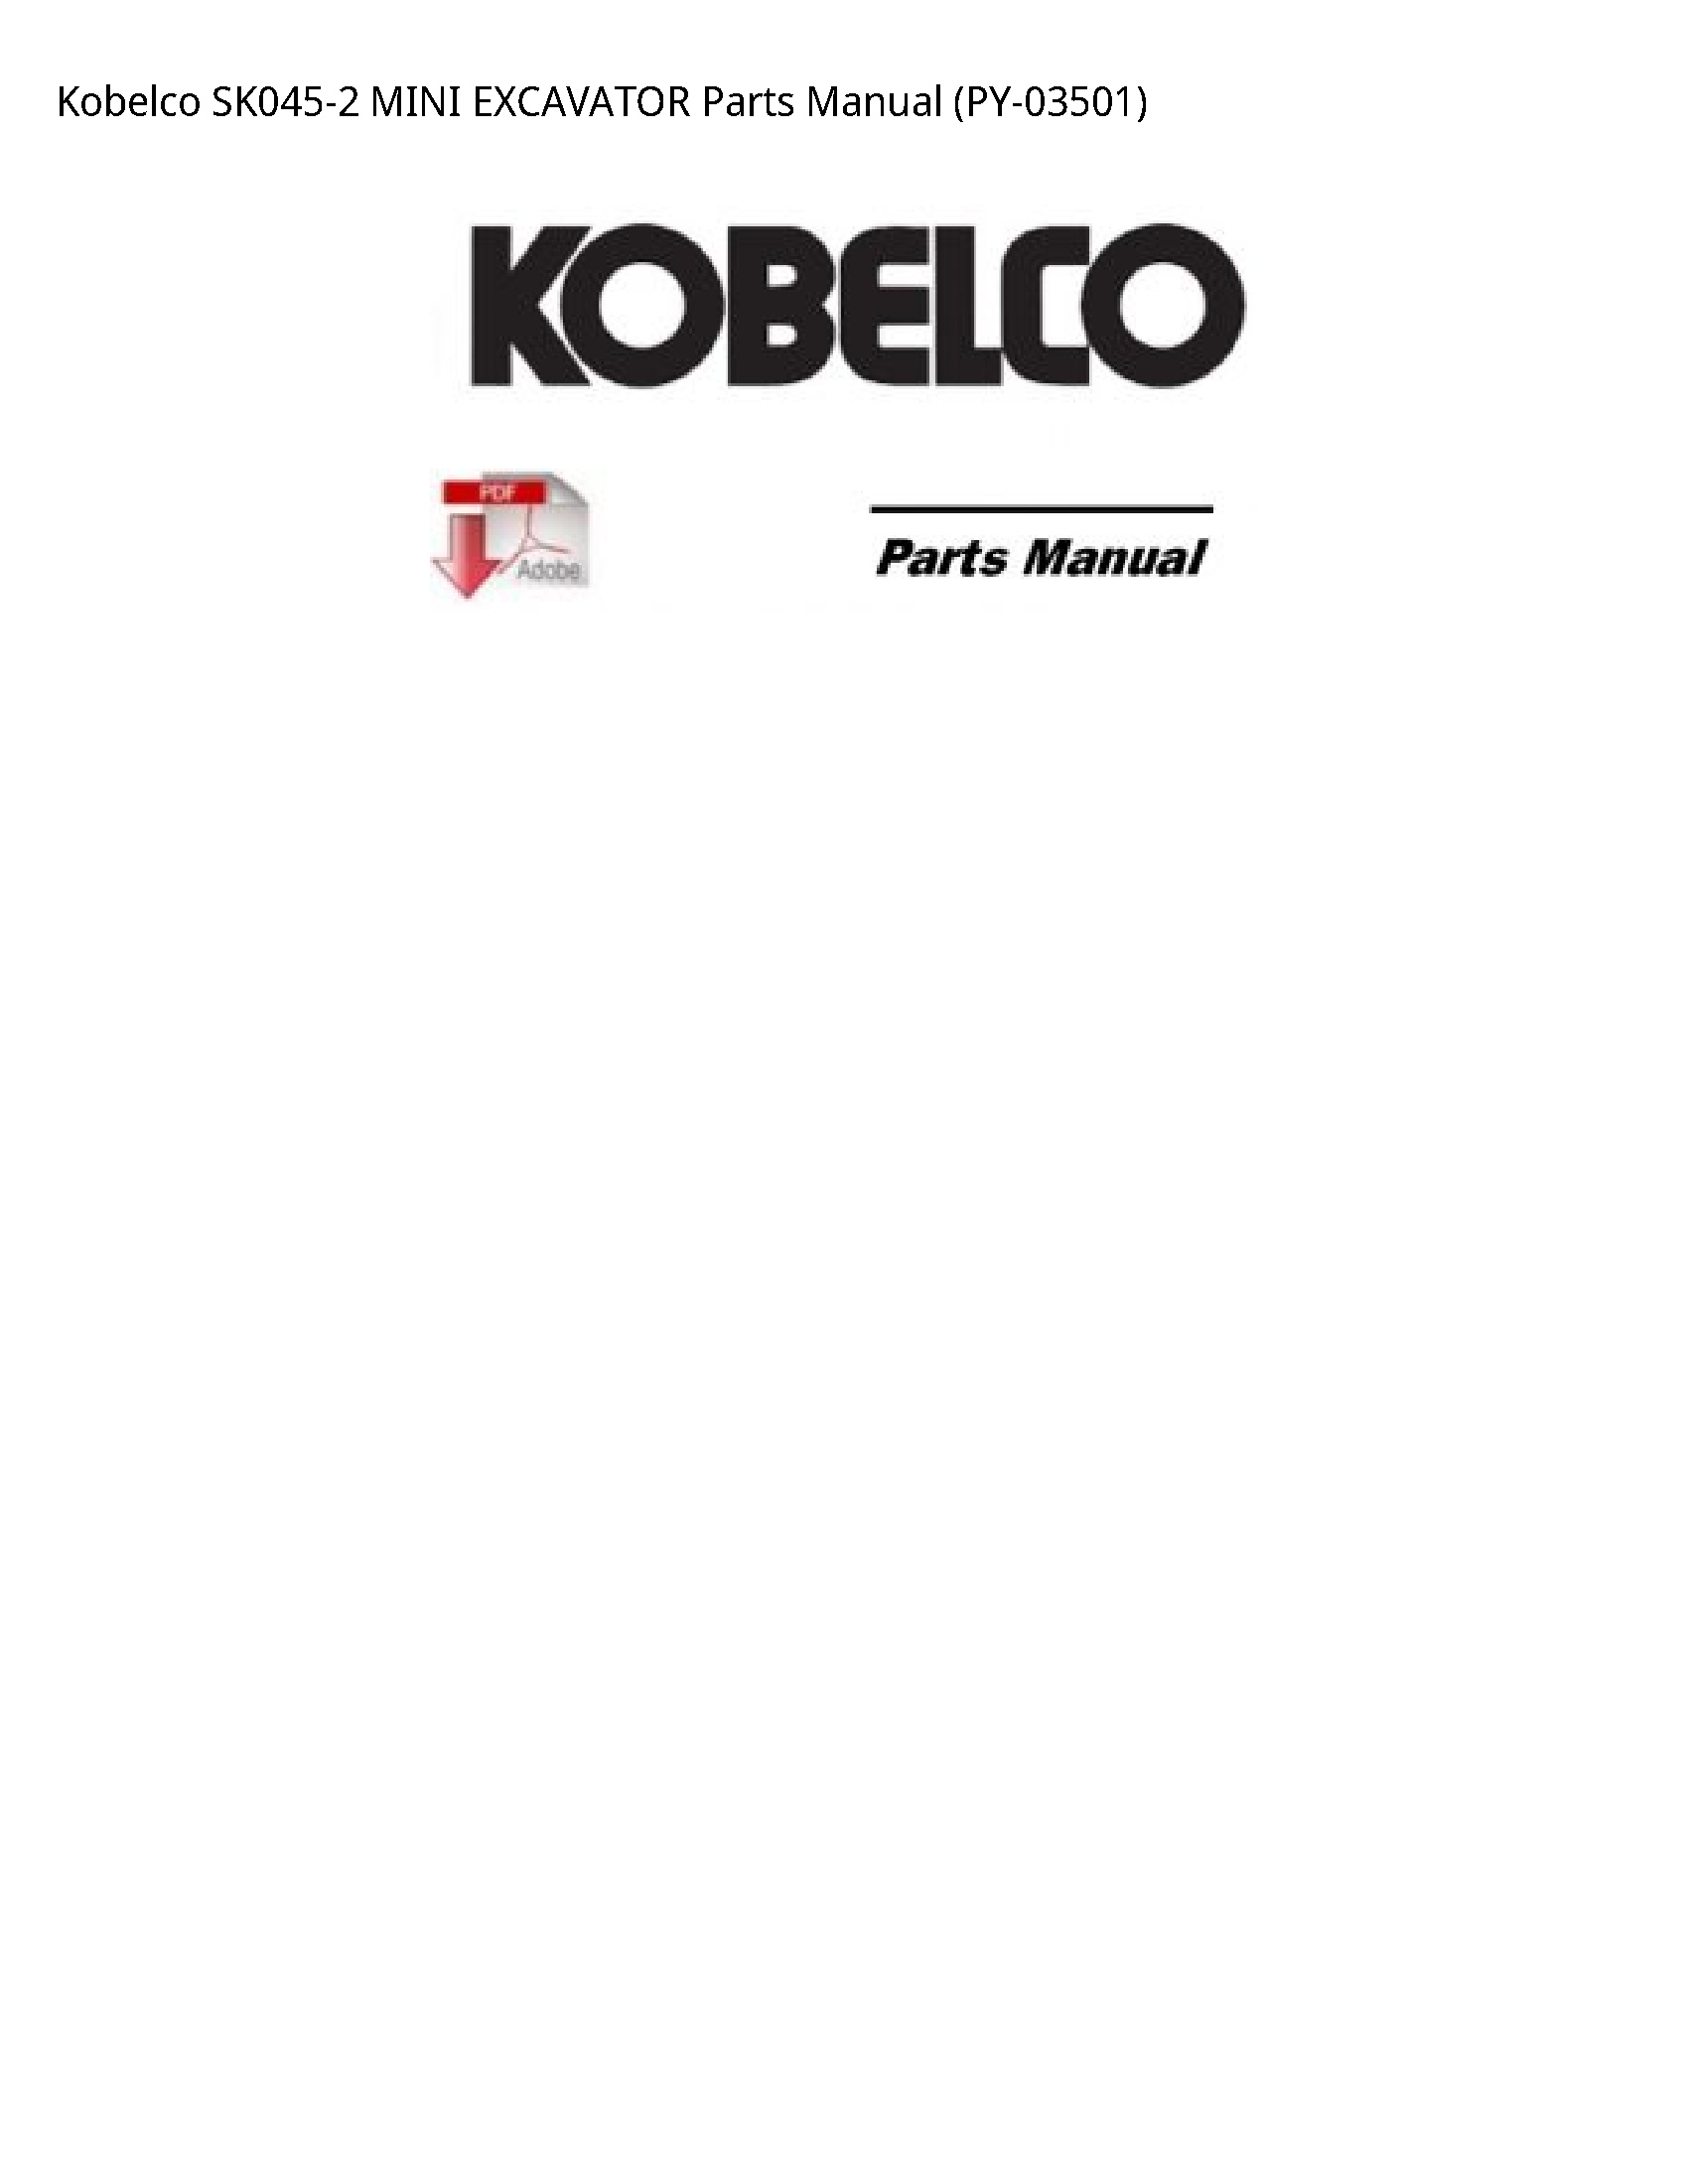 Kobelco SK045-2 MINI EXCAVATOR Parts manual